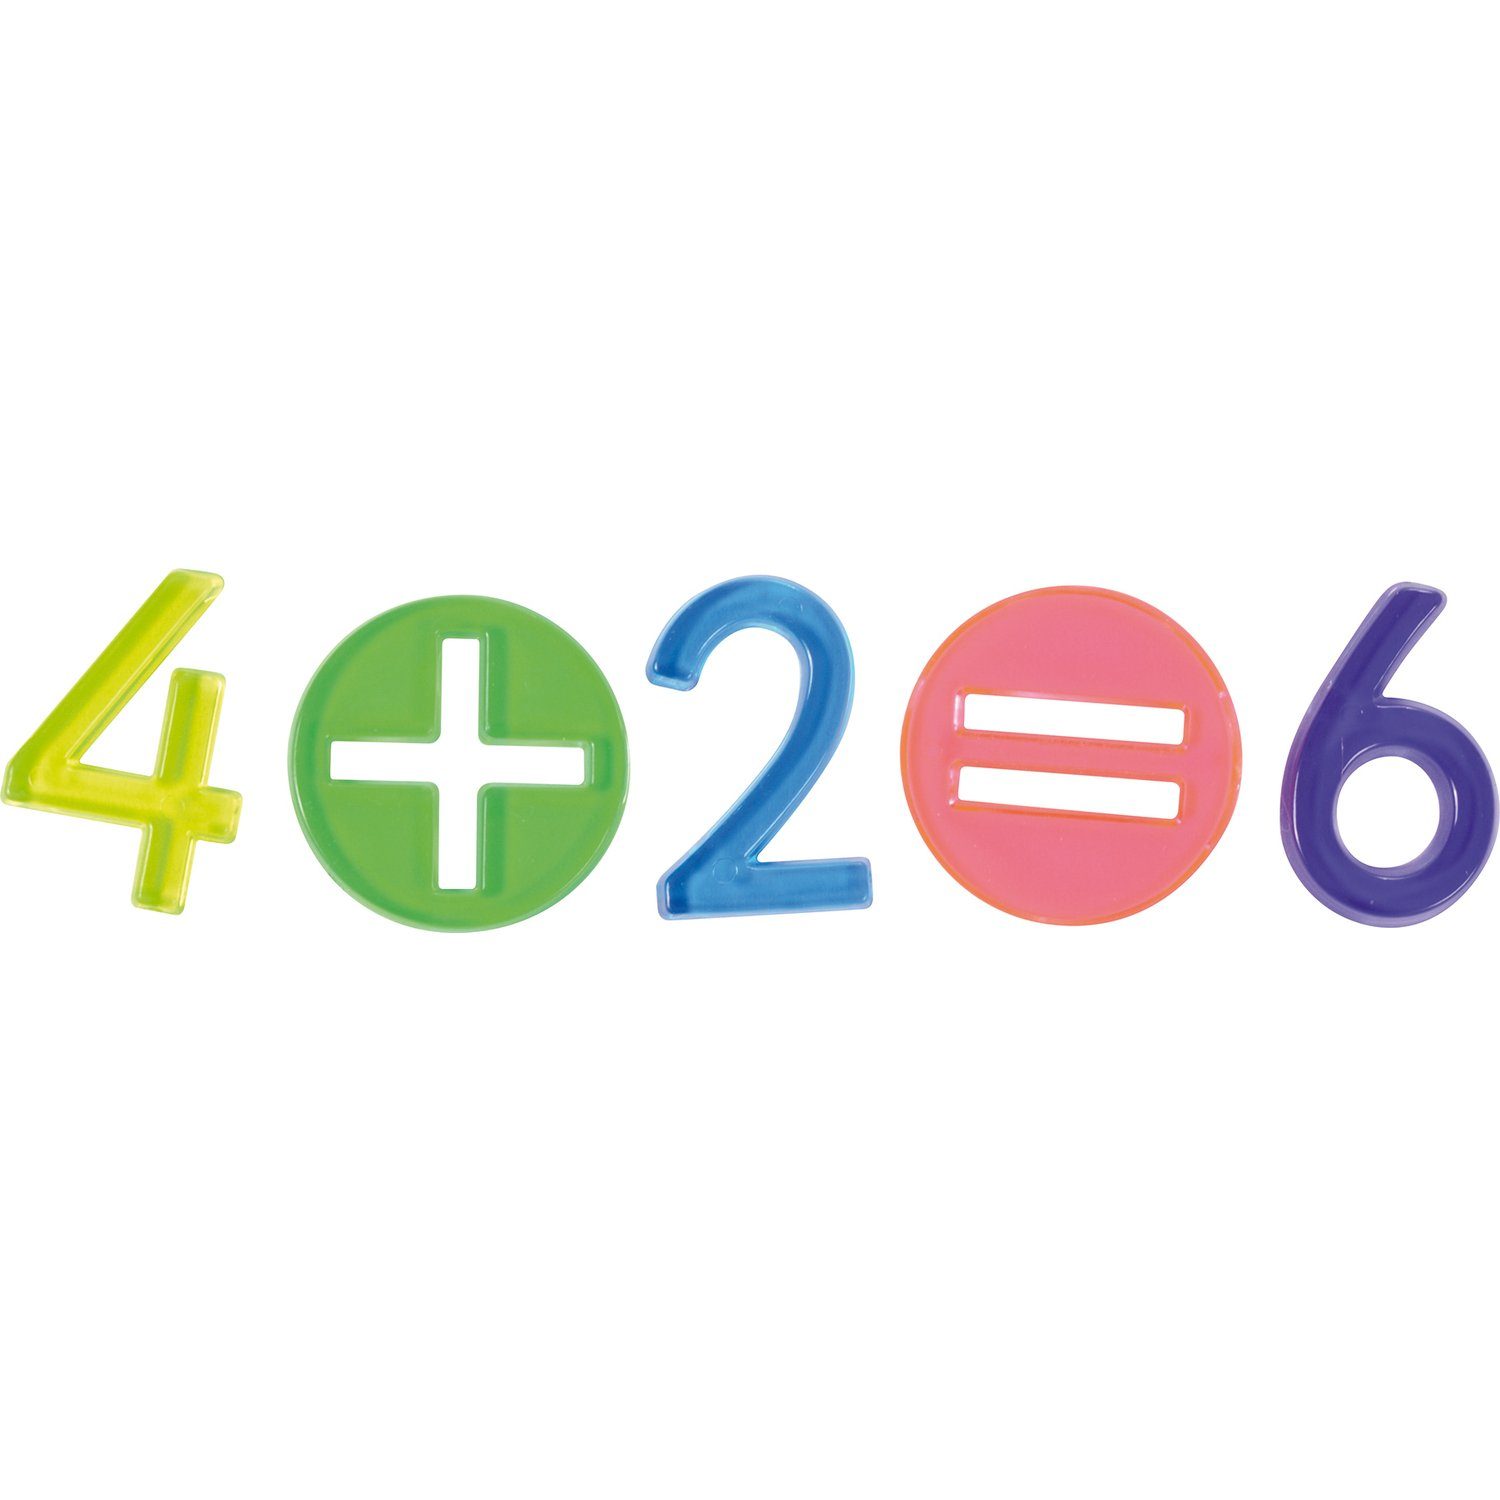 EDUPLAY Mathe-Zeichen Experimentierkasten Regenbogen Zahlen und